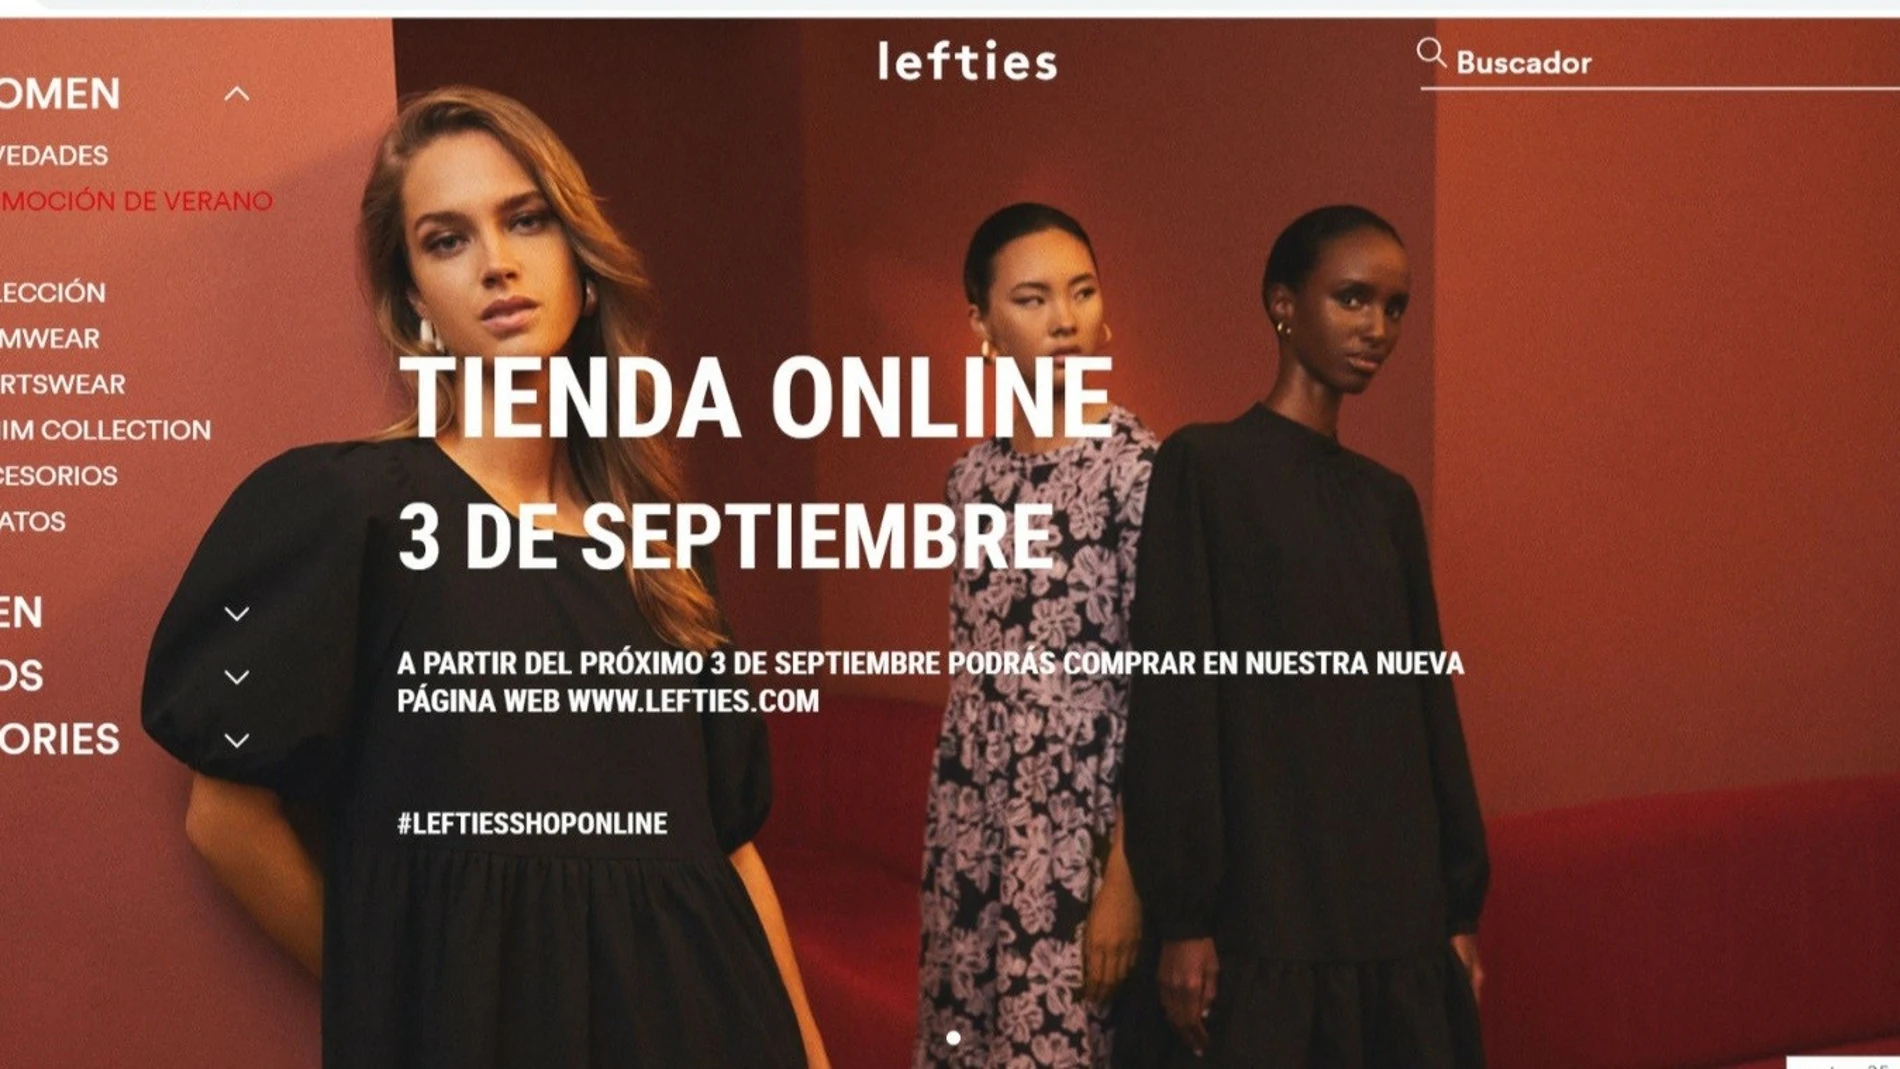 Economía/Empresas.- Lefties (Inditex) lanzará en septiembre su venta 'online' en España